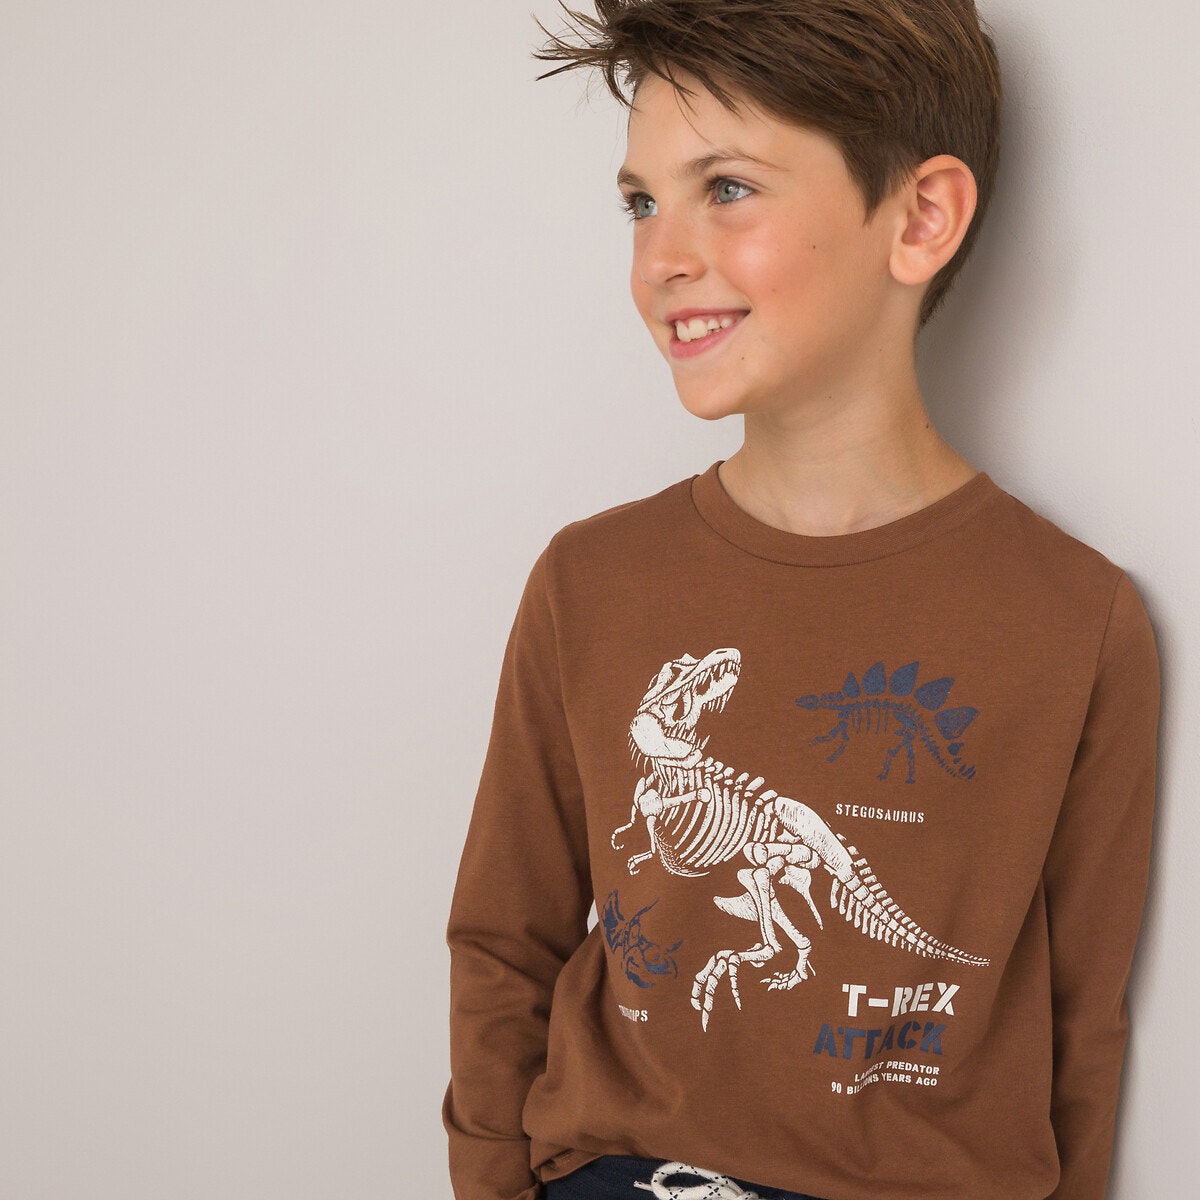 Μόδα > Παιδικά > Αγόρι > T-shirt, πόλο > Μακριά μανίκια Μακρυμάνικη μπλούζα με στάμπα δεινόσαυρους